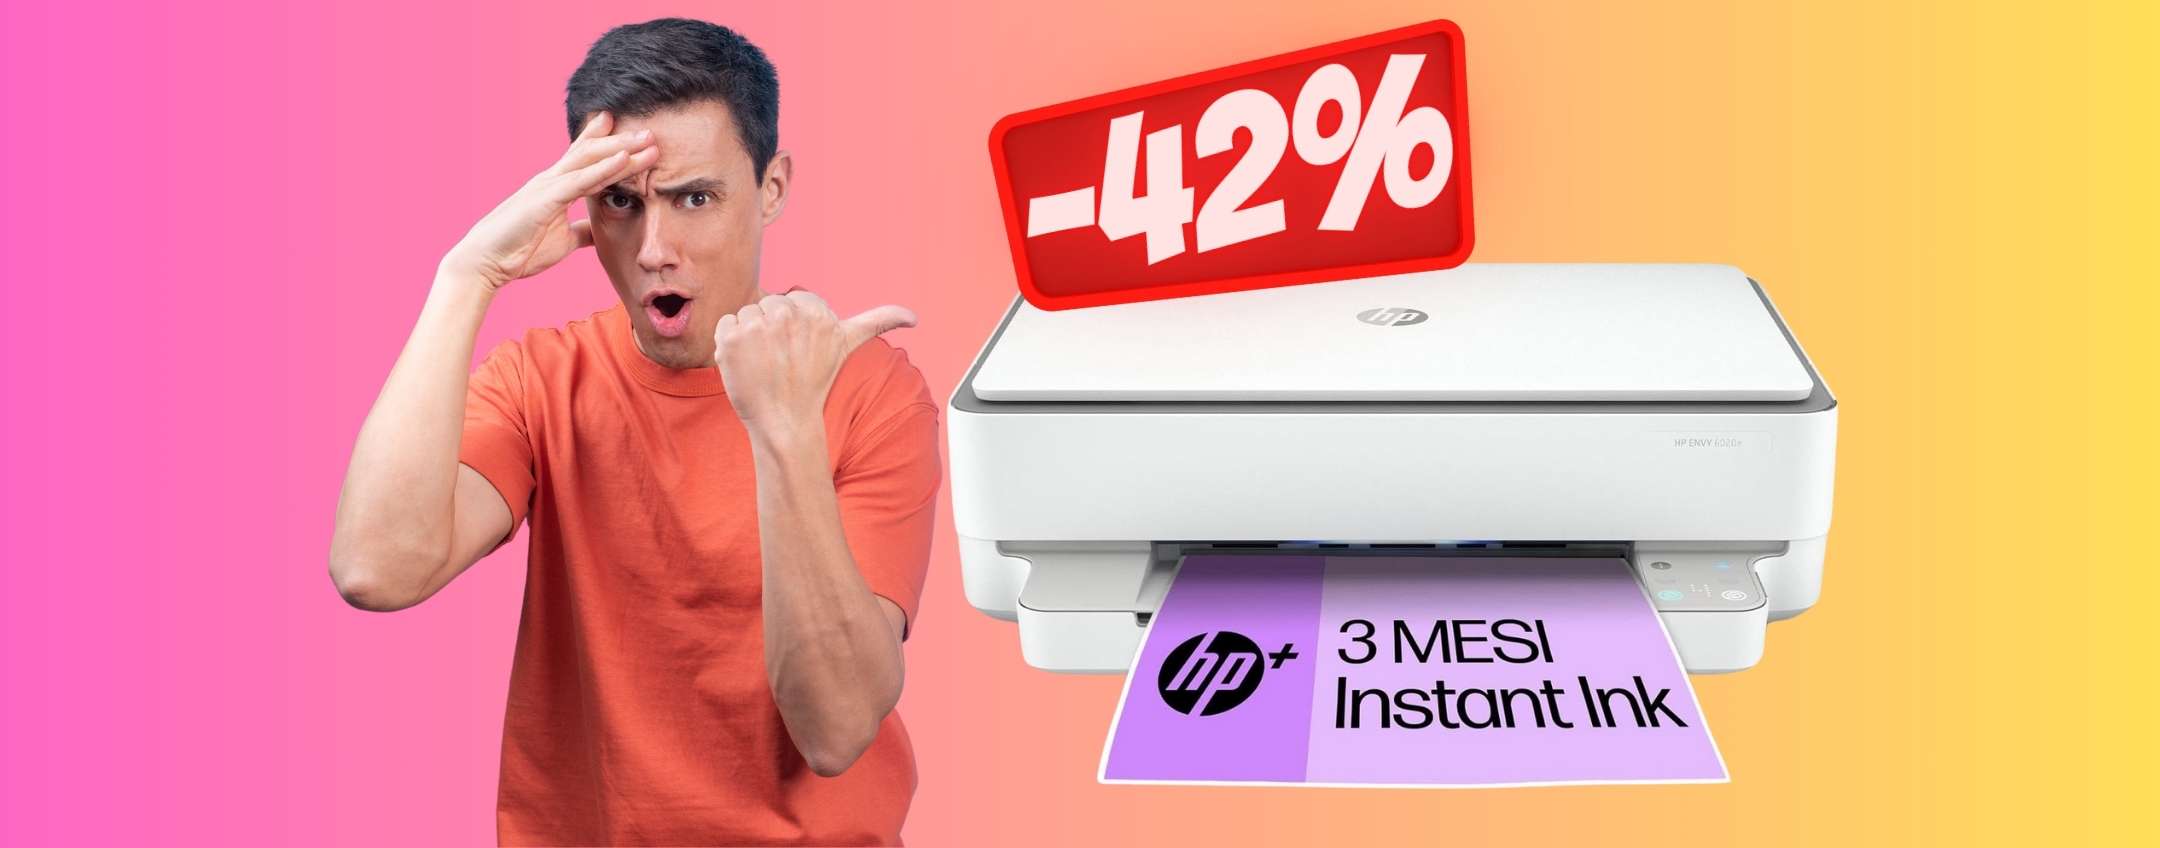 HP Envy 6020e: stampante multifunzione WiFi in OFFERTA al 42%